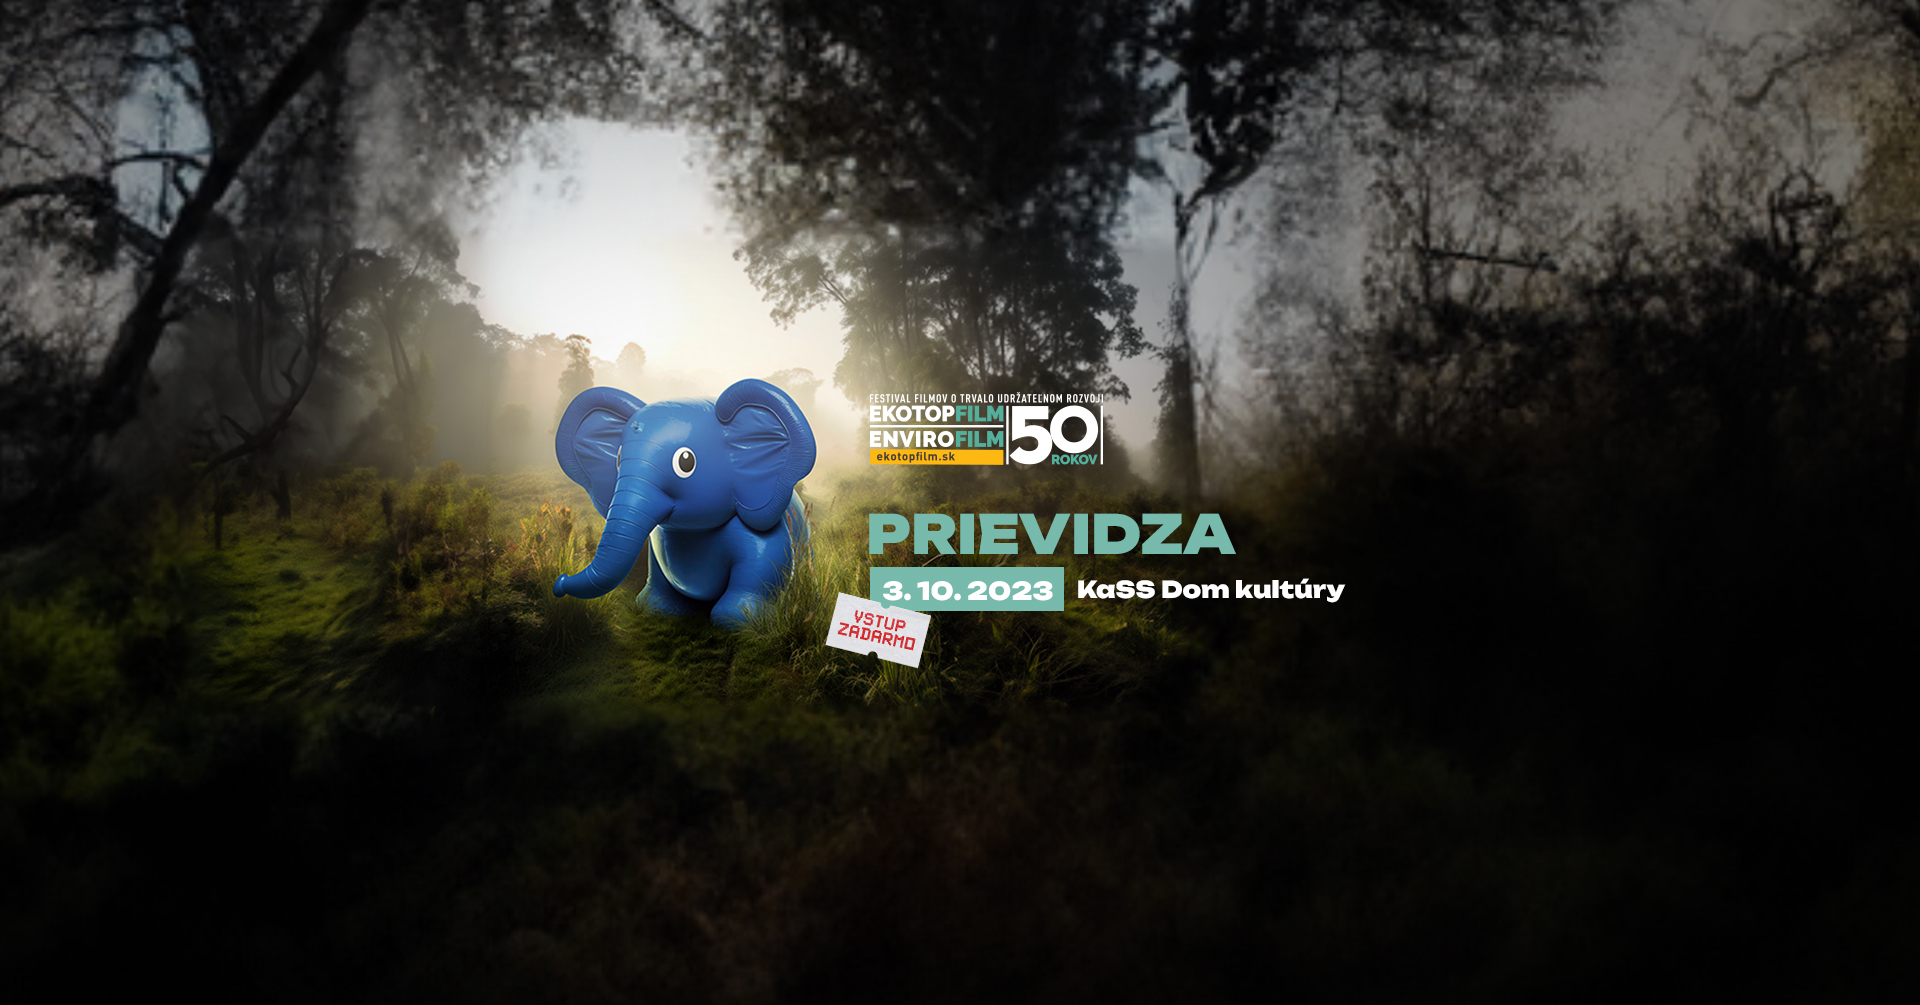 PRIEVIDZA - EKOTOPFILM I ENVIROFILM TOUR 2023